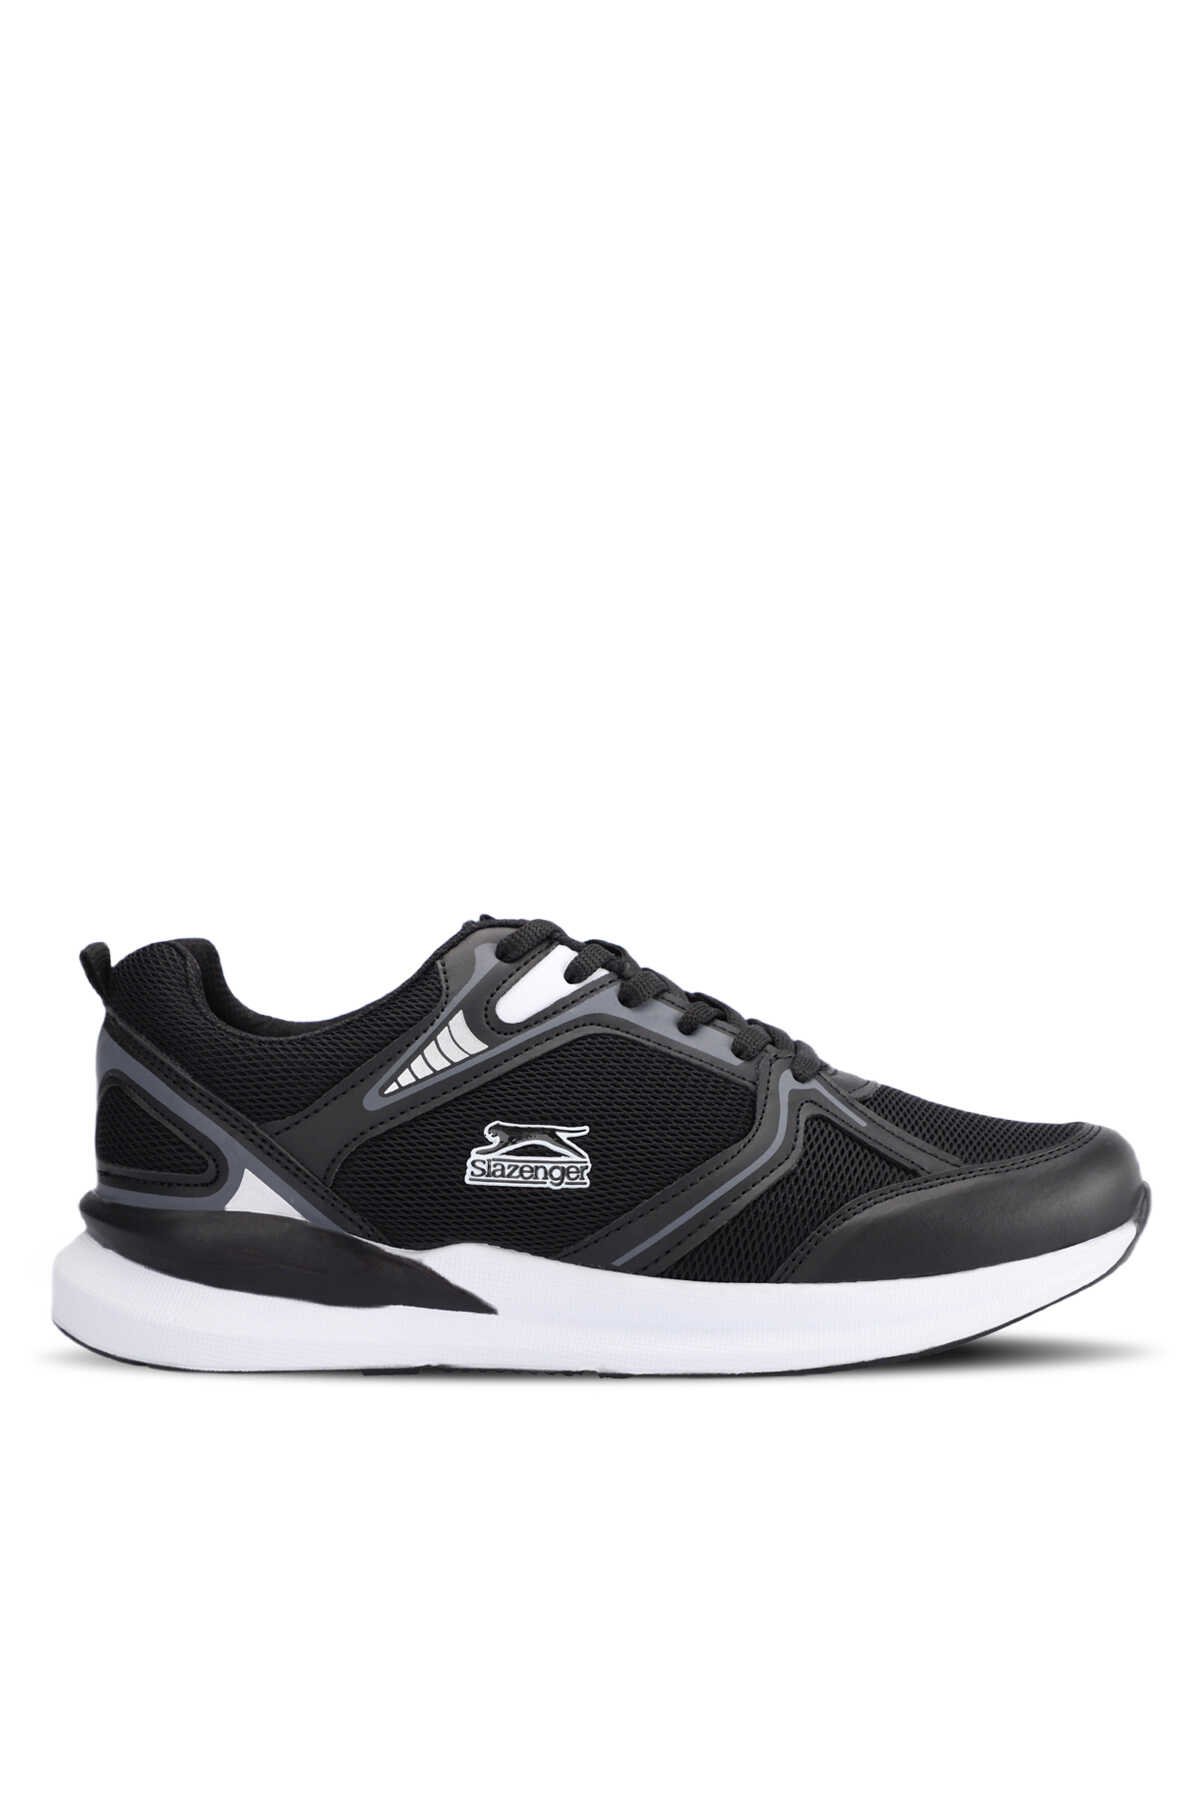 Slazenger - Slazenger MELBA I Sneaker Erkek Ayakkabı Siyah / Beyaz